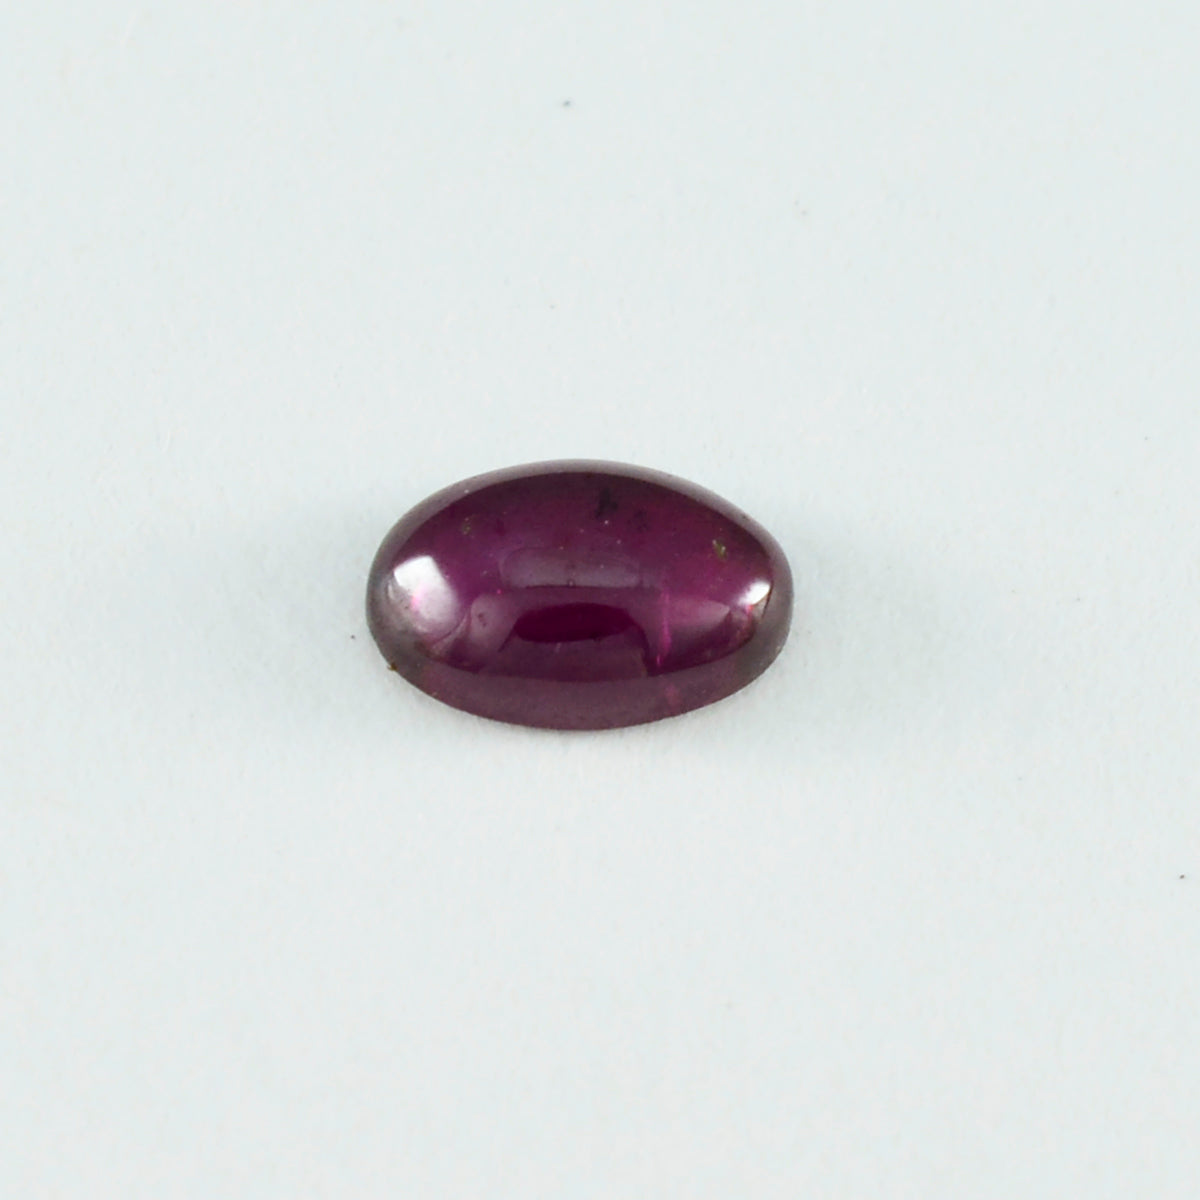 Riyogems 1PC Red Garnet Cabochon 7x9 mm Oval Shape good-looking Quality Loose Gemstone